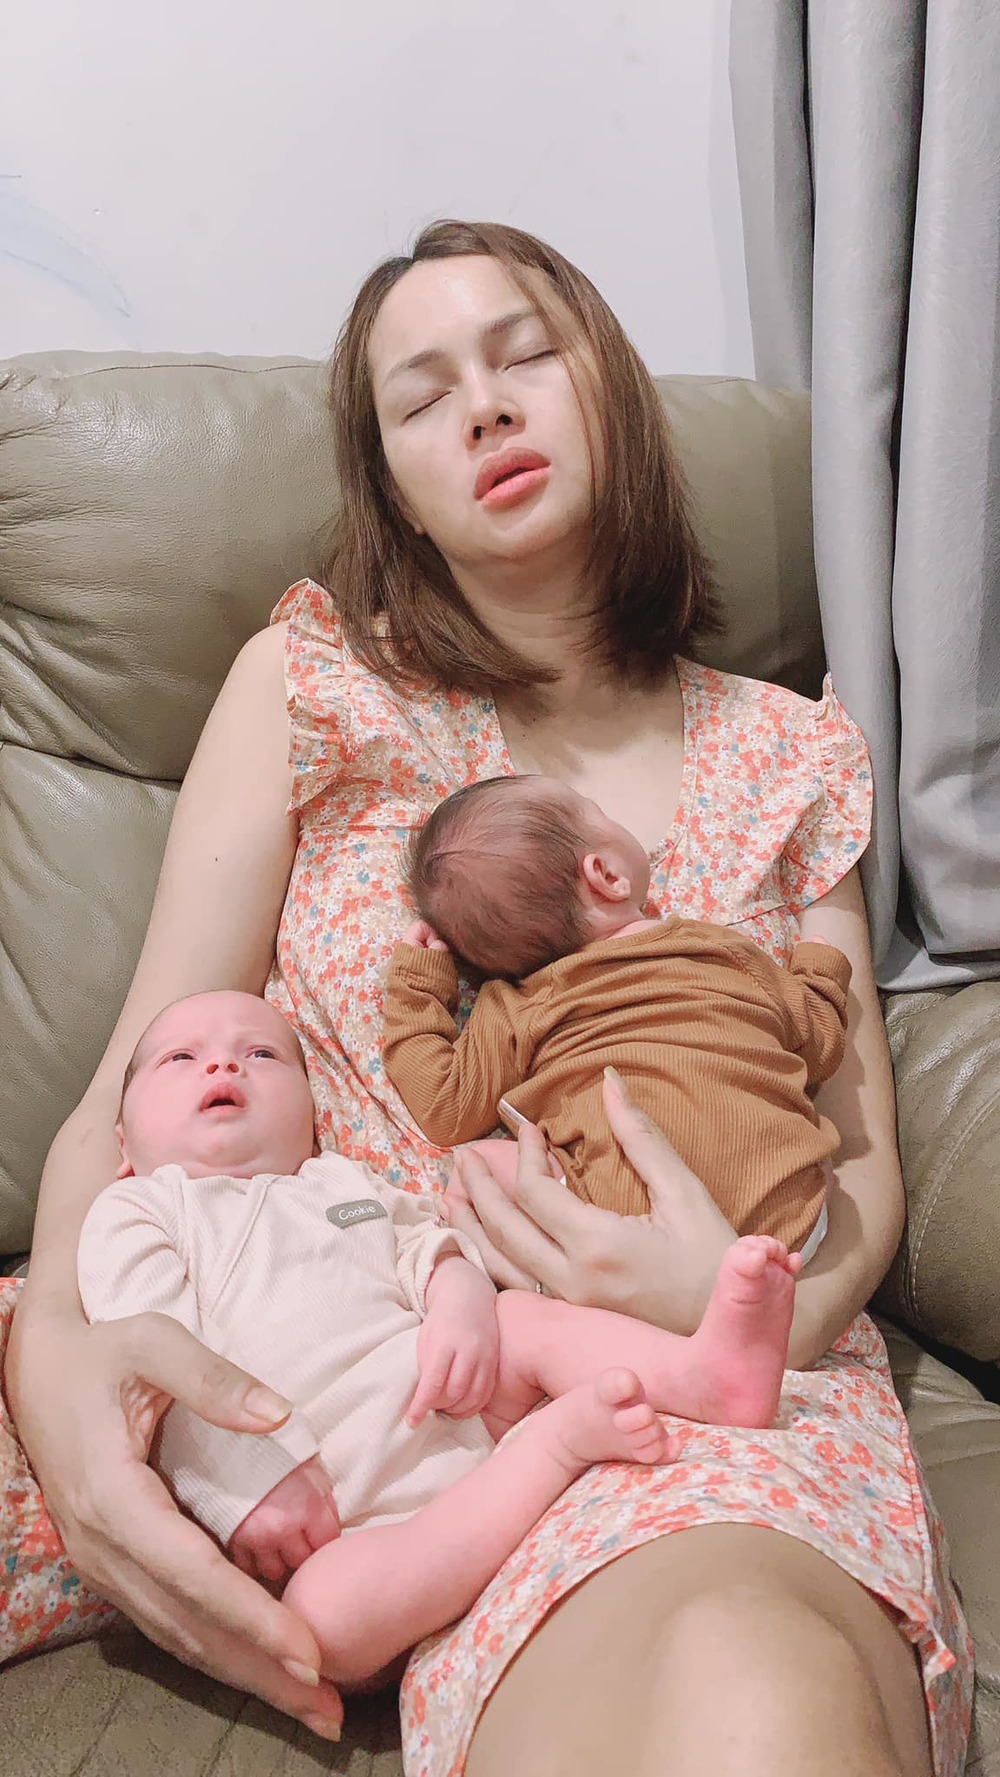  
Khoảnh khắc Diễm Châu bế em bé và ngủ gật khiến nhiều người lo lắng cho sức khoẻ của bà mẹ trẻ. - Tin sao Viet - Tin tuc sao Viet - Scandal sao Viet - Tin tuc cua Sao - Tin cua Sao